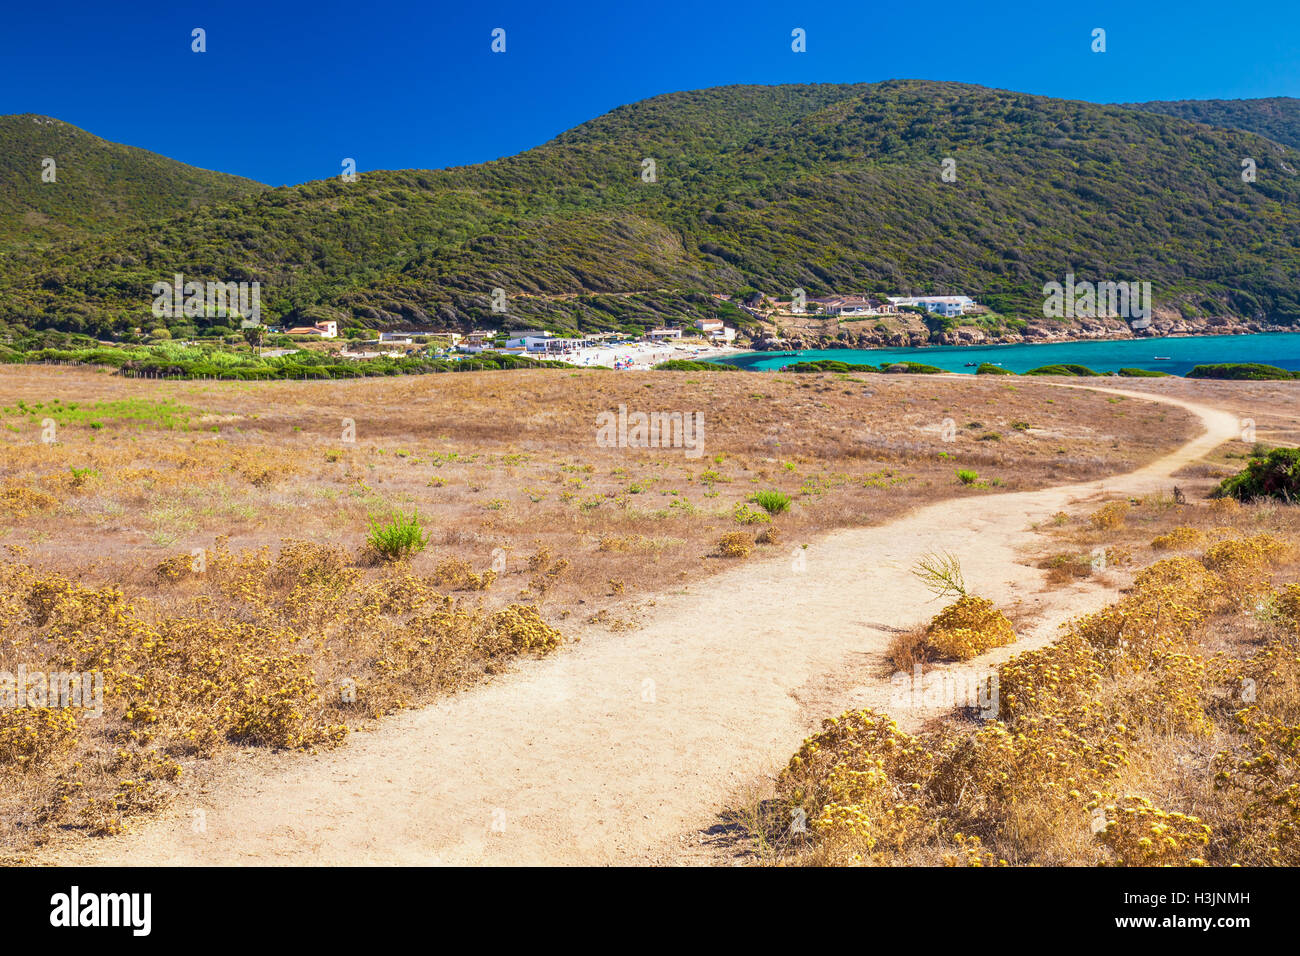 Les personnes bénéficiant du beau temps sur la plage de sable petit Capo avec Red Rocks près de Ajaccio, Corse, Europe. Banque D'Images